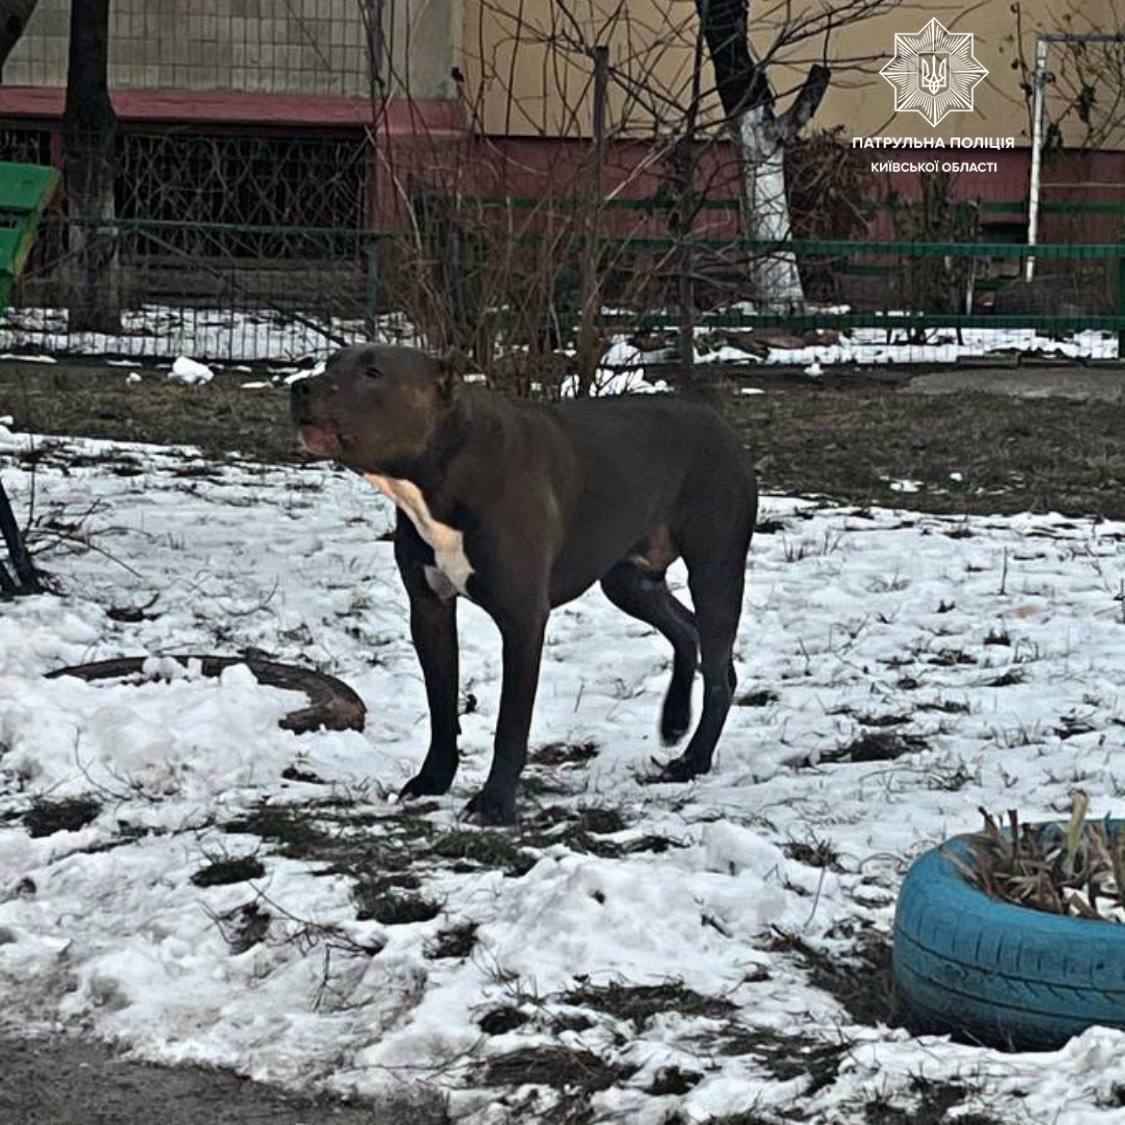 На Київщині пес бійцівської породи покусав двох дітей: тварину вигулювали без намордника та повідця. Фото